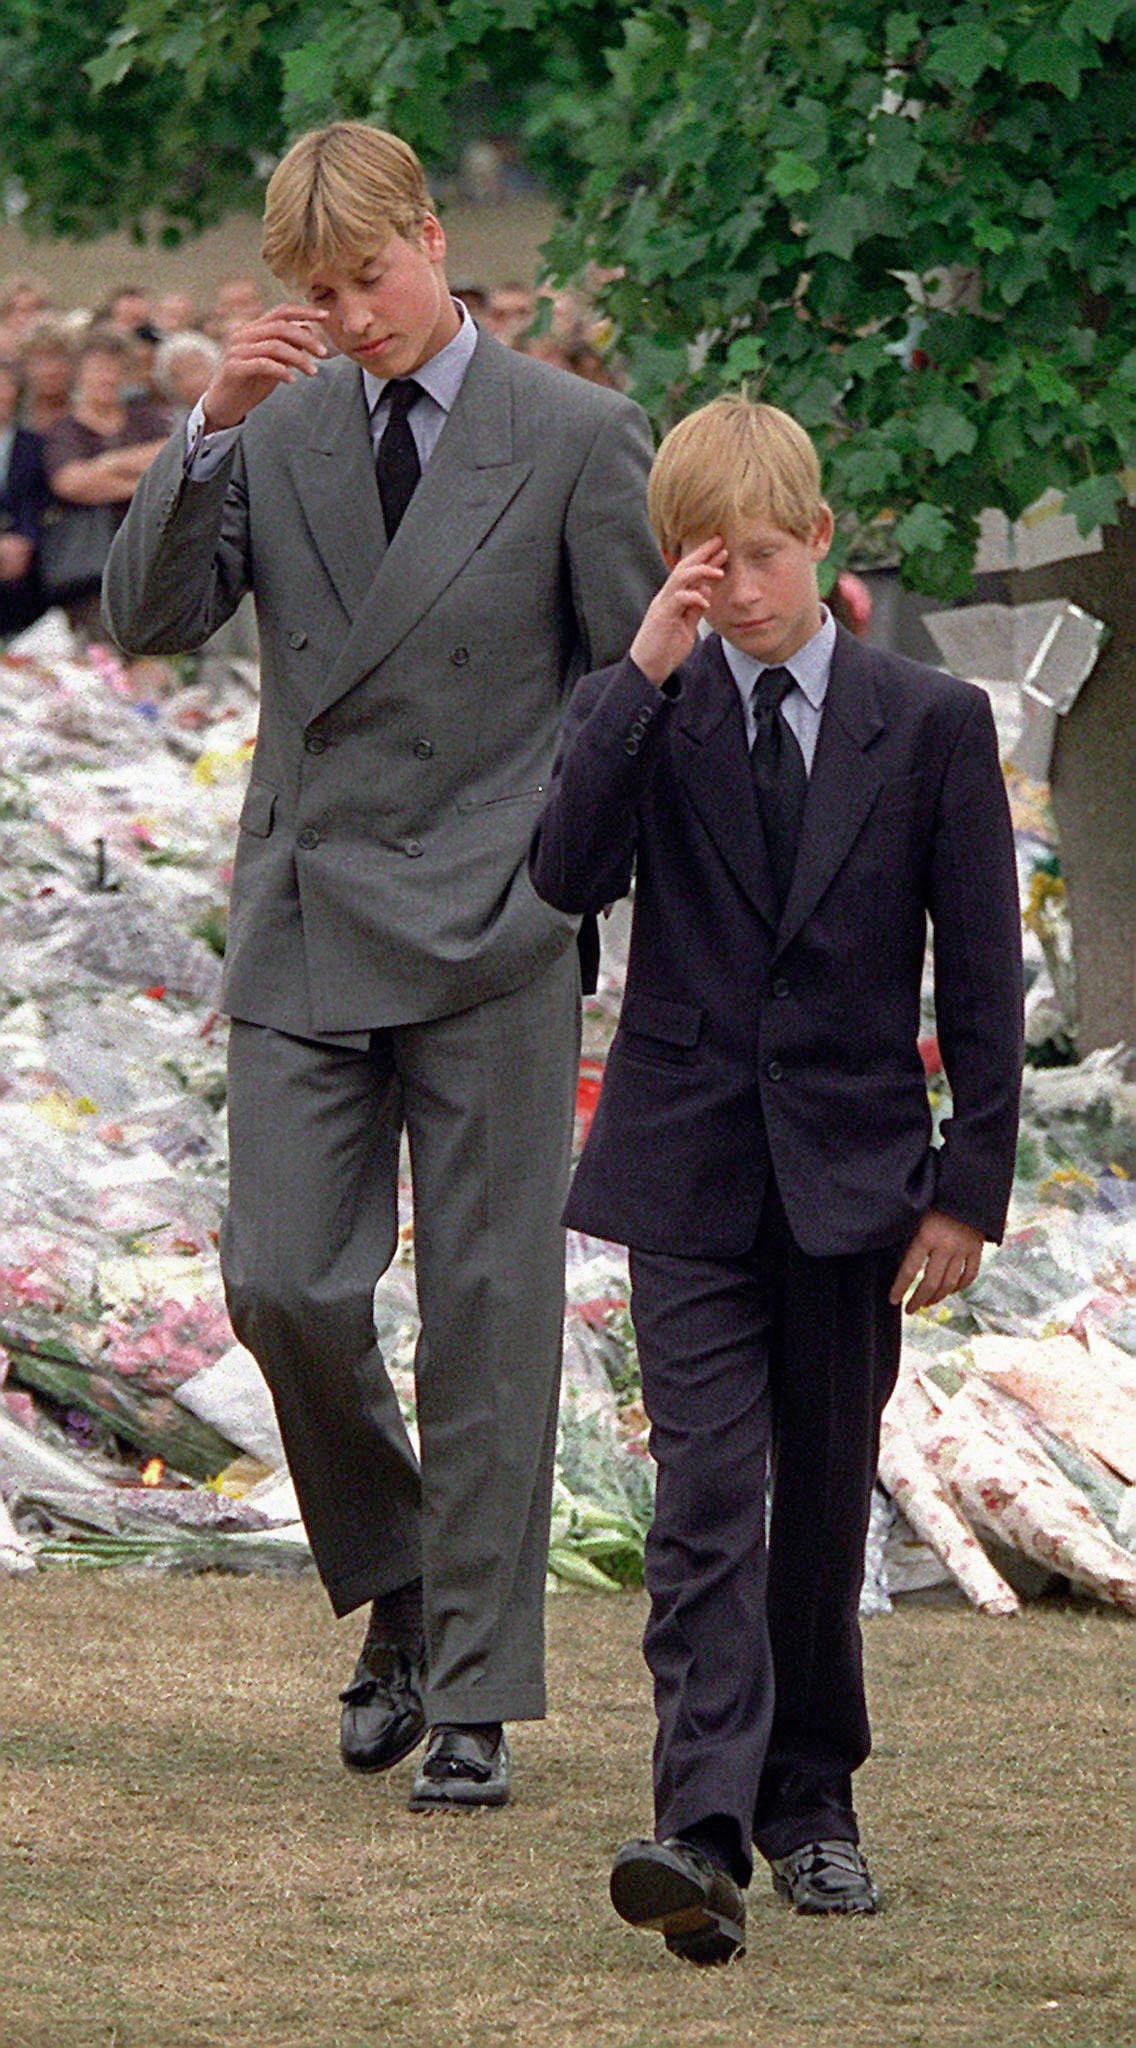 El príncipe William y el príncipe Harry después de llegar al Palacio de Kensington para ver algunas de las flores y los recuerdos dejados en memoria de su madre, la princesa Diana, en Londres, el viernes 5 de septiembre de 1997. | Foto: Getty Images